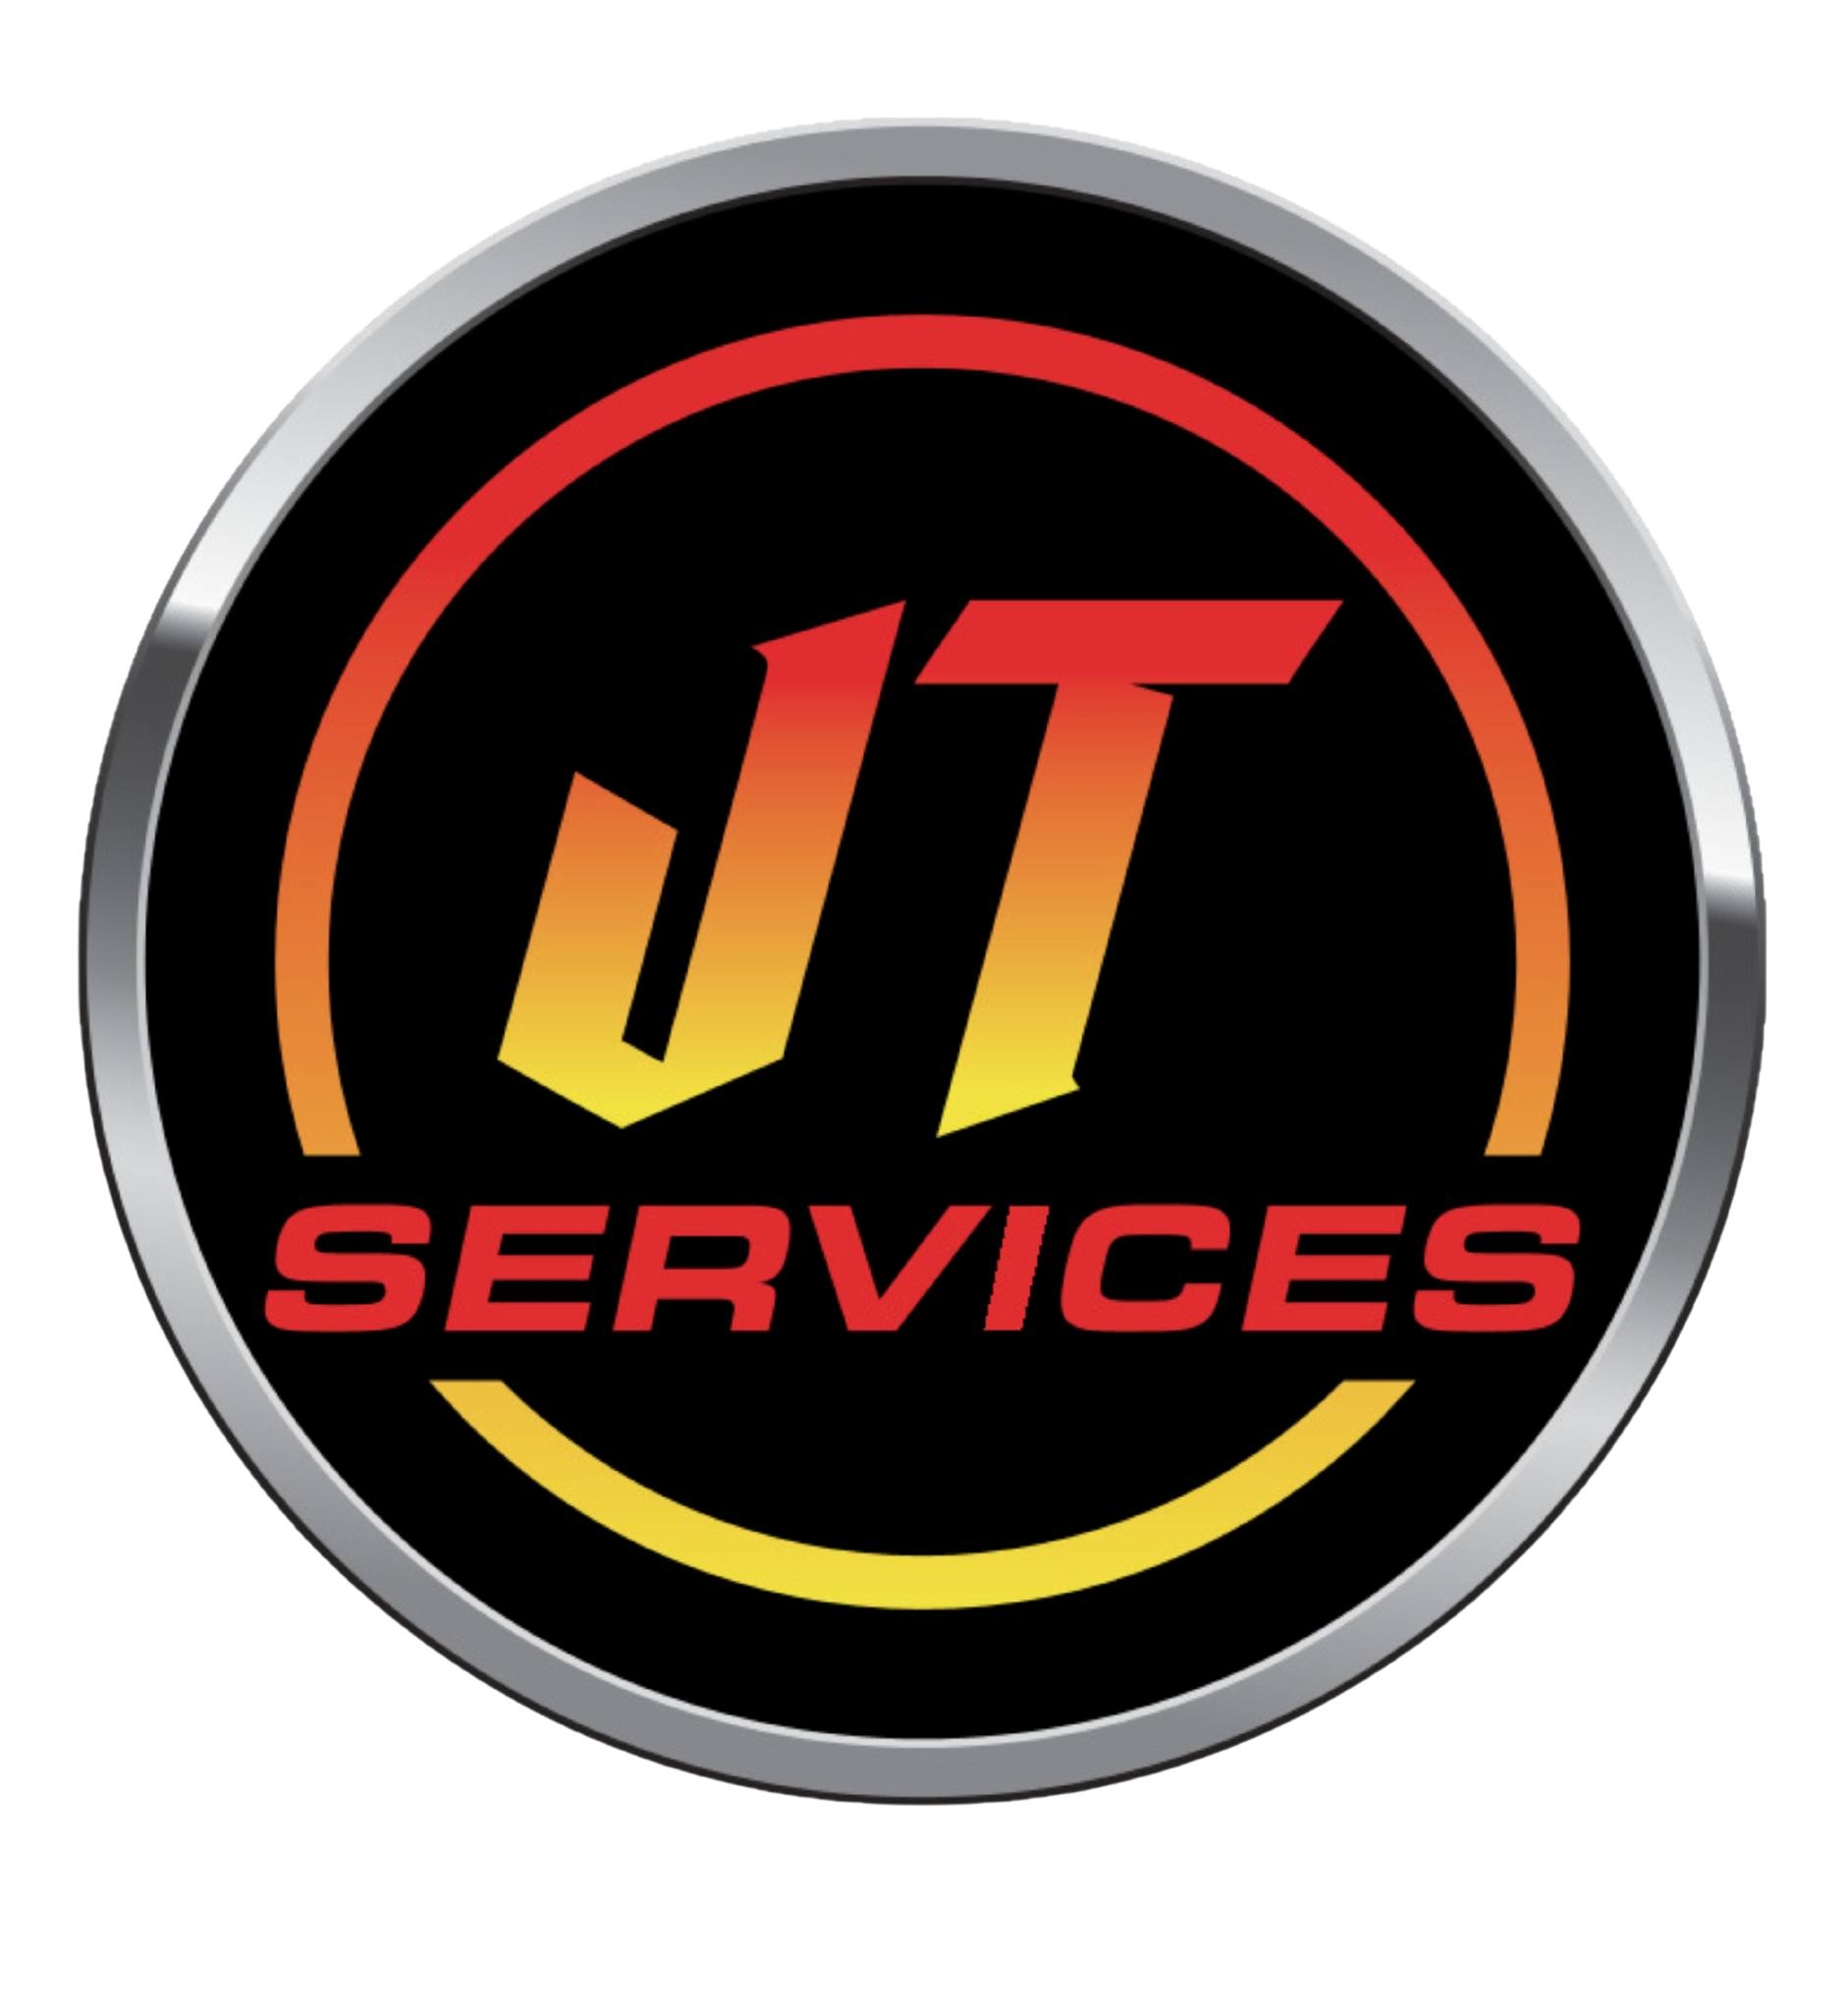 JT Services